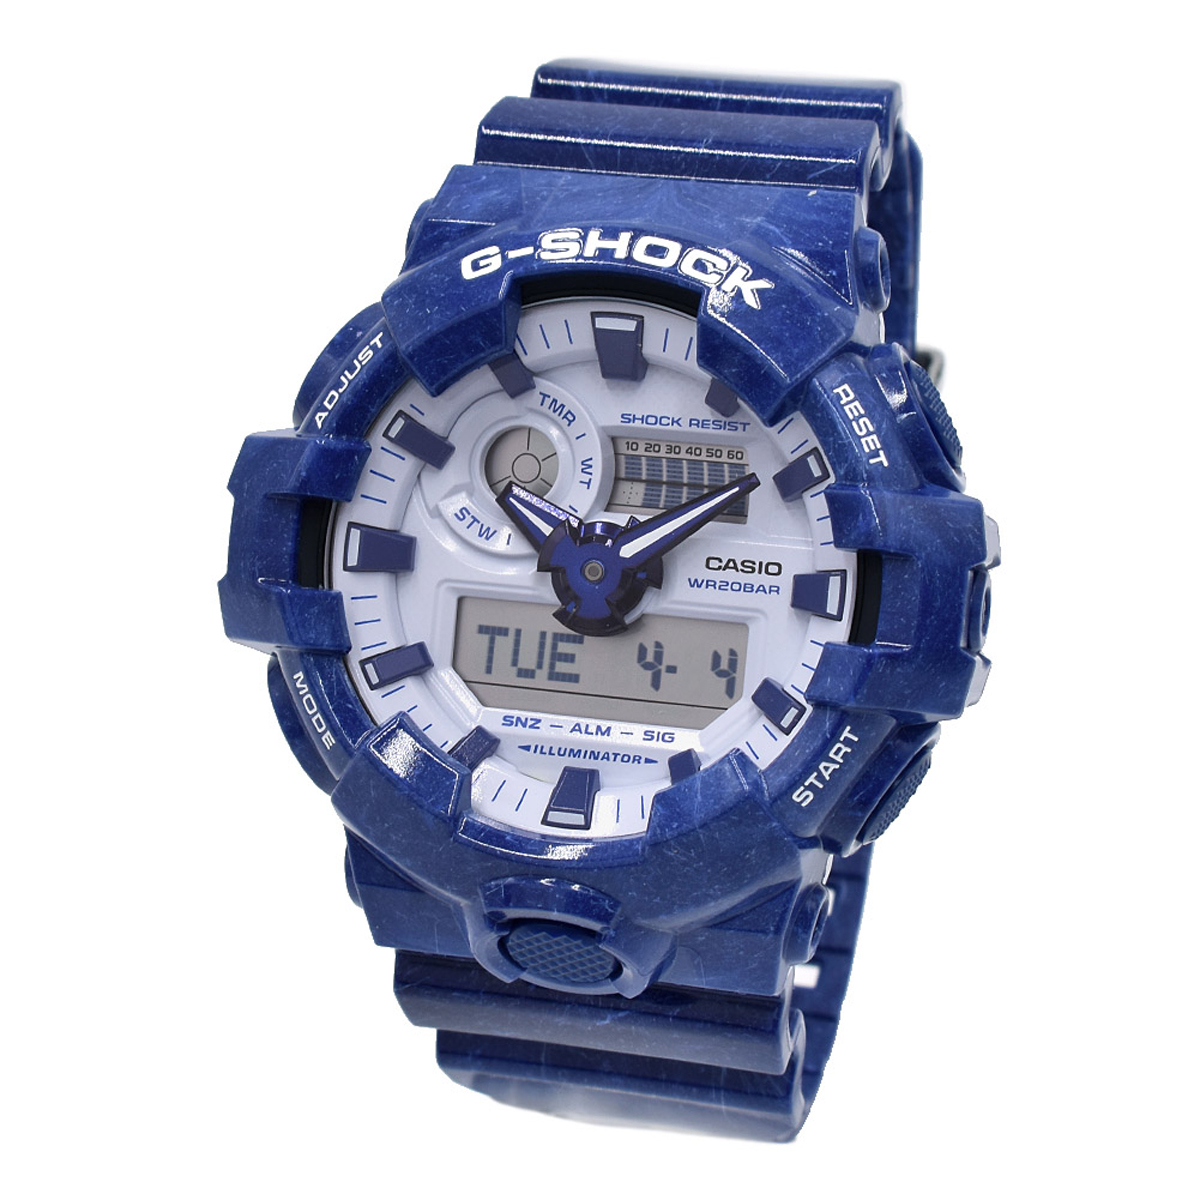 カシオ CASIO 腕時計 G-SHOCK Gショック GA-700BWP-2A ANALOG-DIGITAL GA-700 SERIES アナデジ 時計 メンズ ホワイト+ブルー 海外正規品